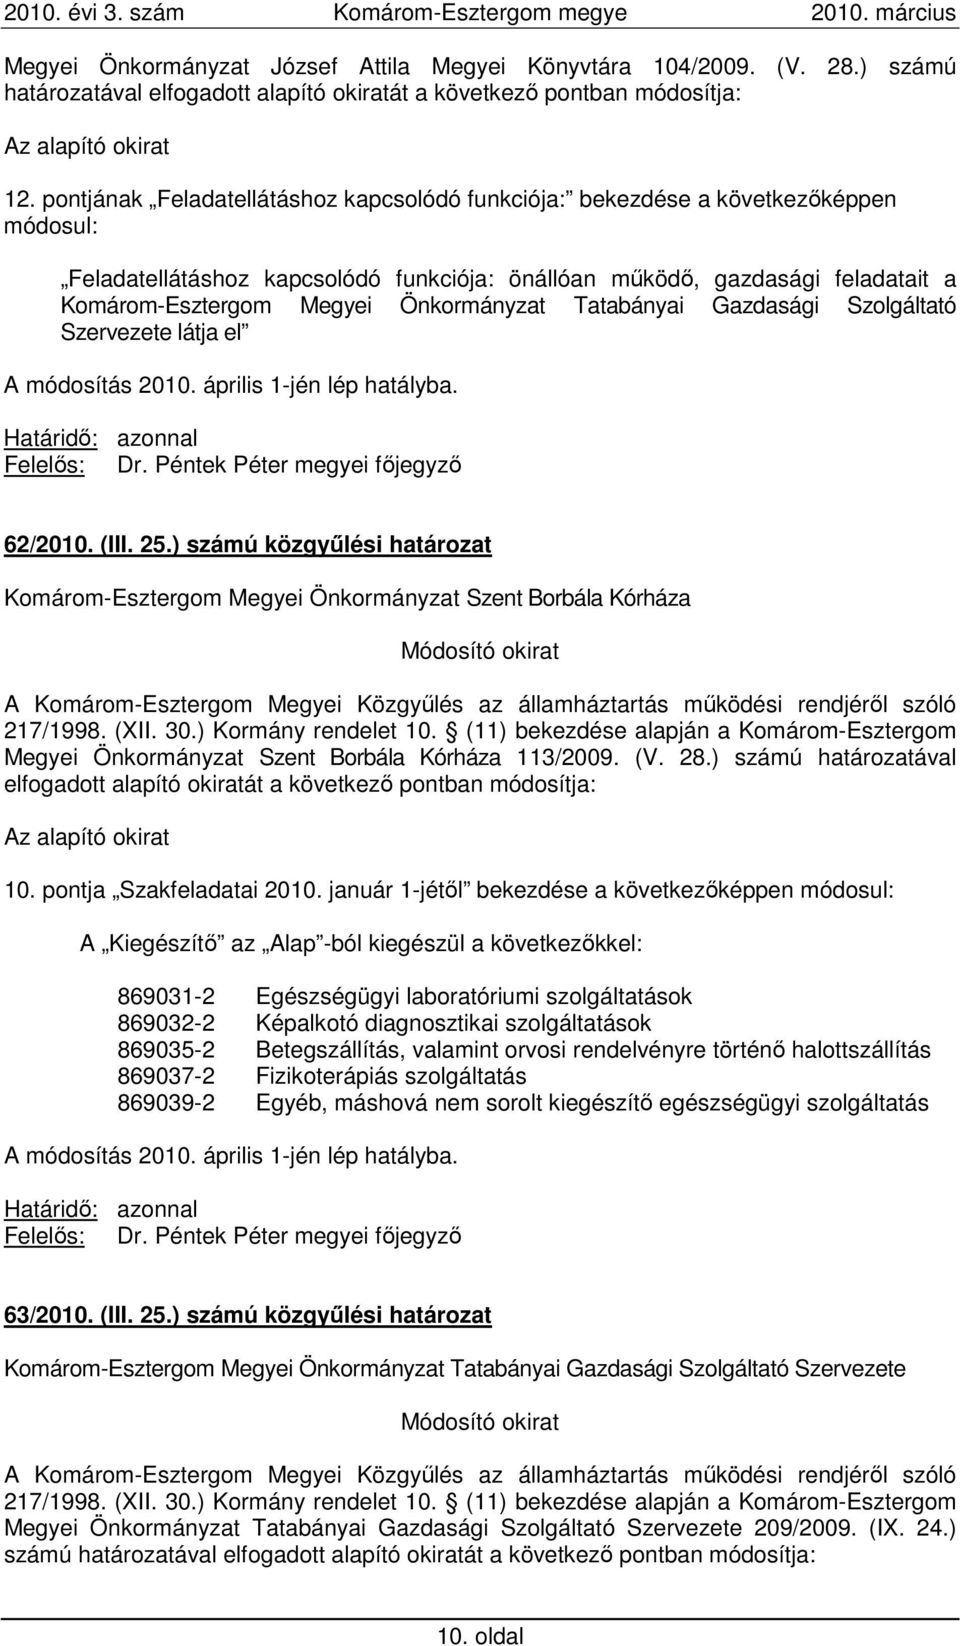 Önkormányzat Tatabányai Gazdasági Szolgáltató Szervezete látja el A módosítás 2010. április 1-jén lép hatályba. Felelıs: Dr. Péntek Péter megyei fıjegyzı 62/2010. (III. 25.